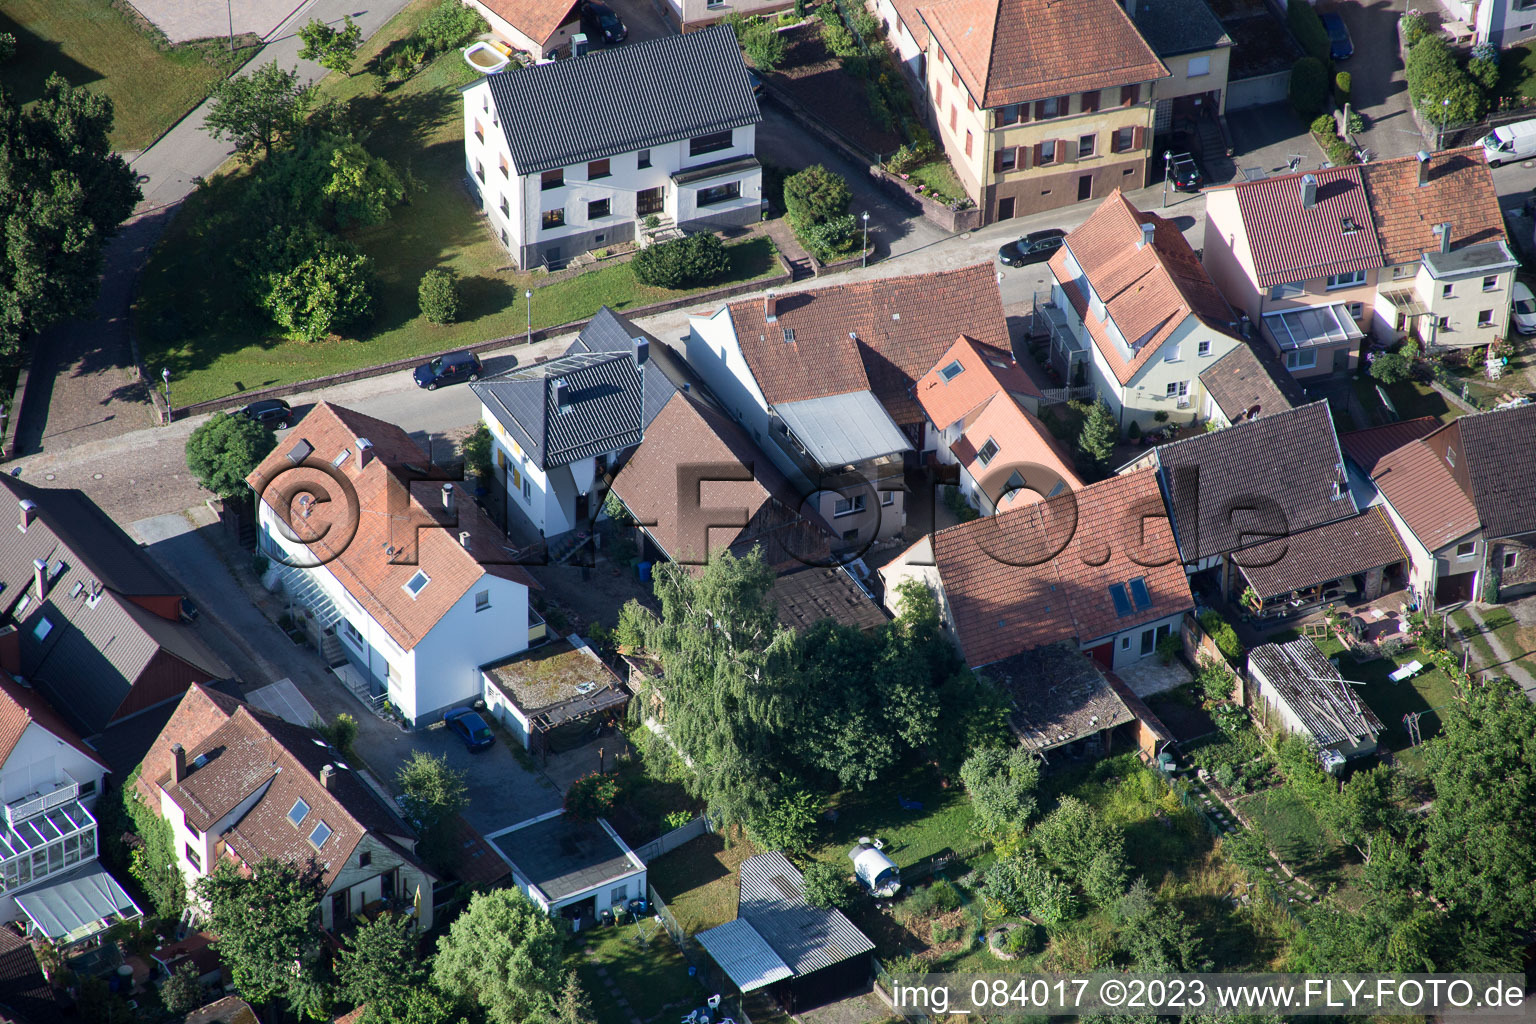 Ortsteil Schluttenbach in Ettlingen im Bundesland Baden-Württemberg, Deutschland aus der Drohnenperspektive